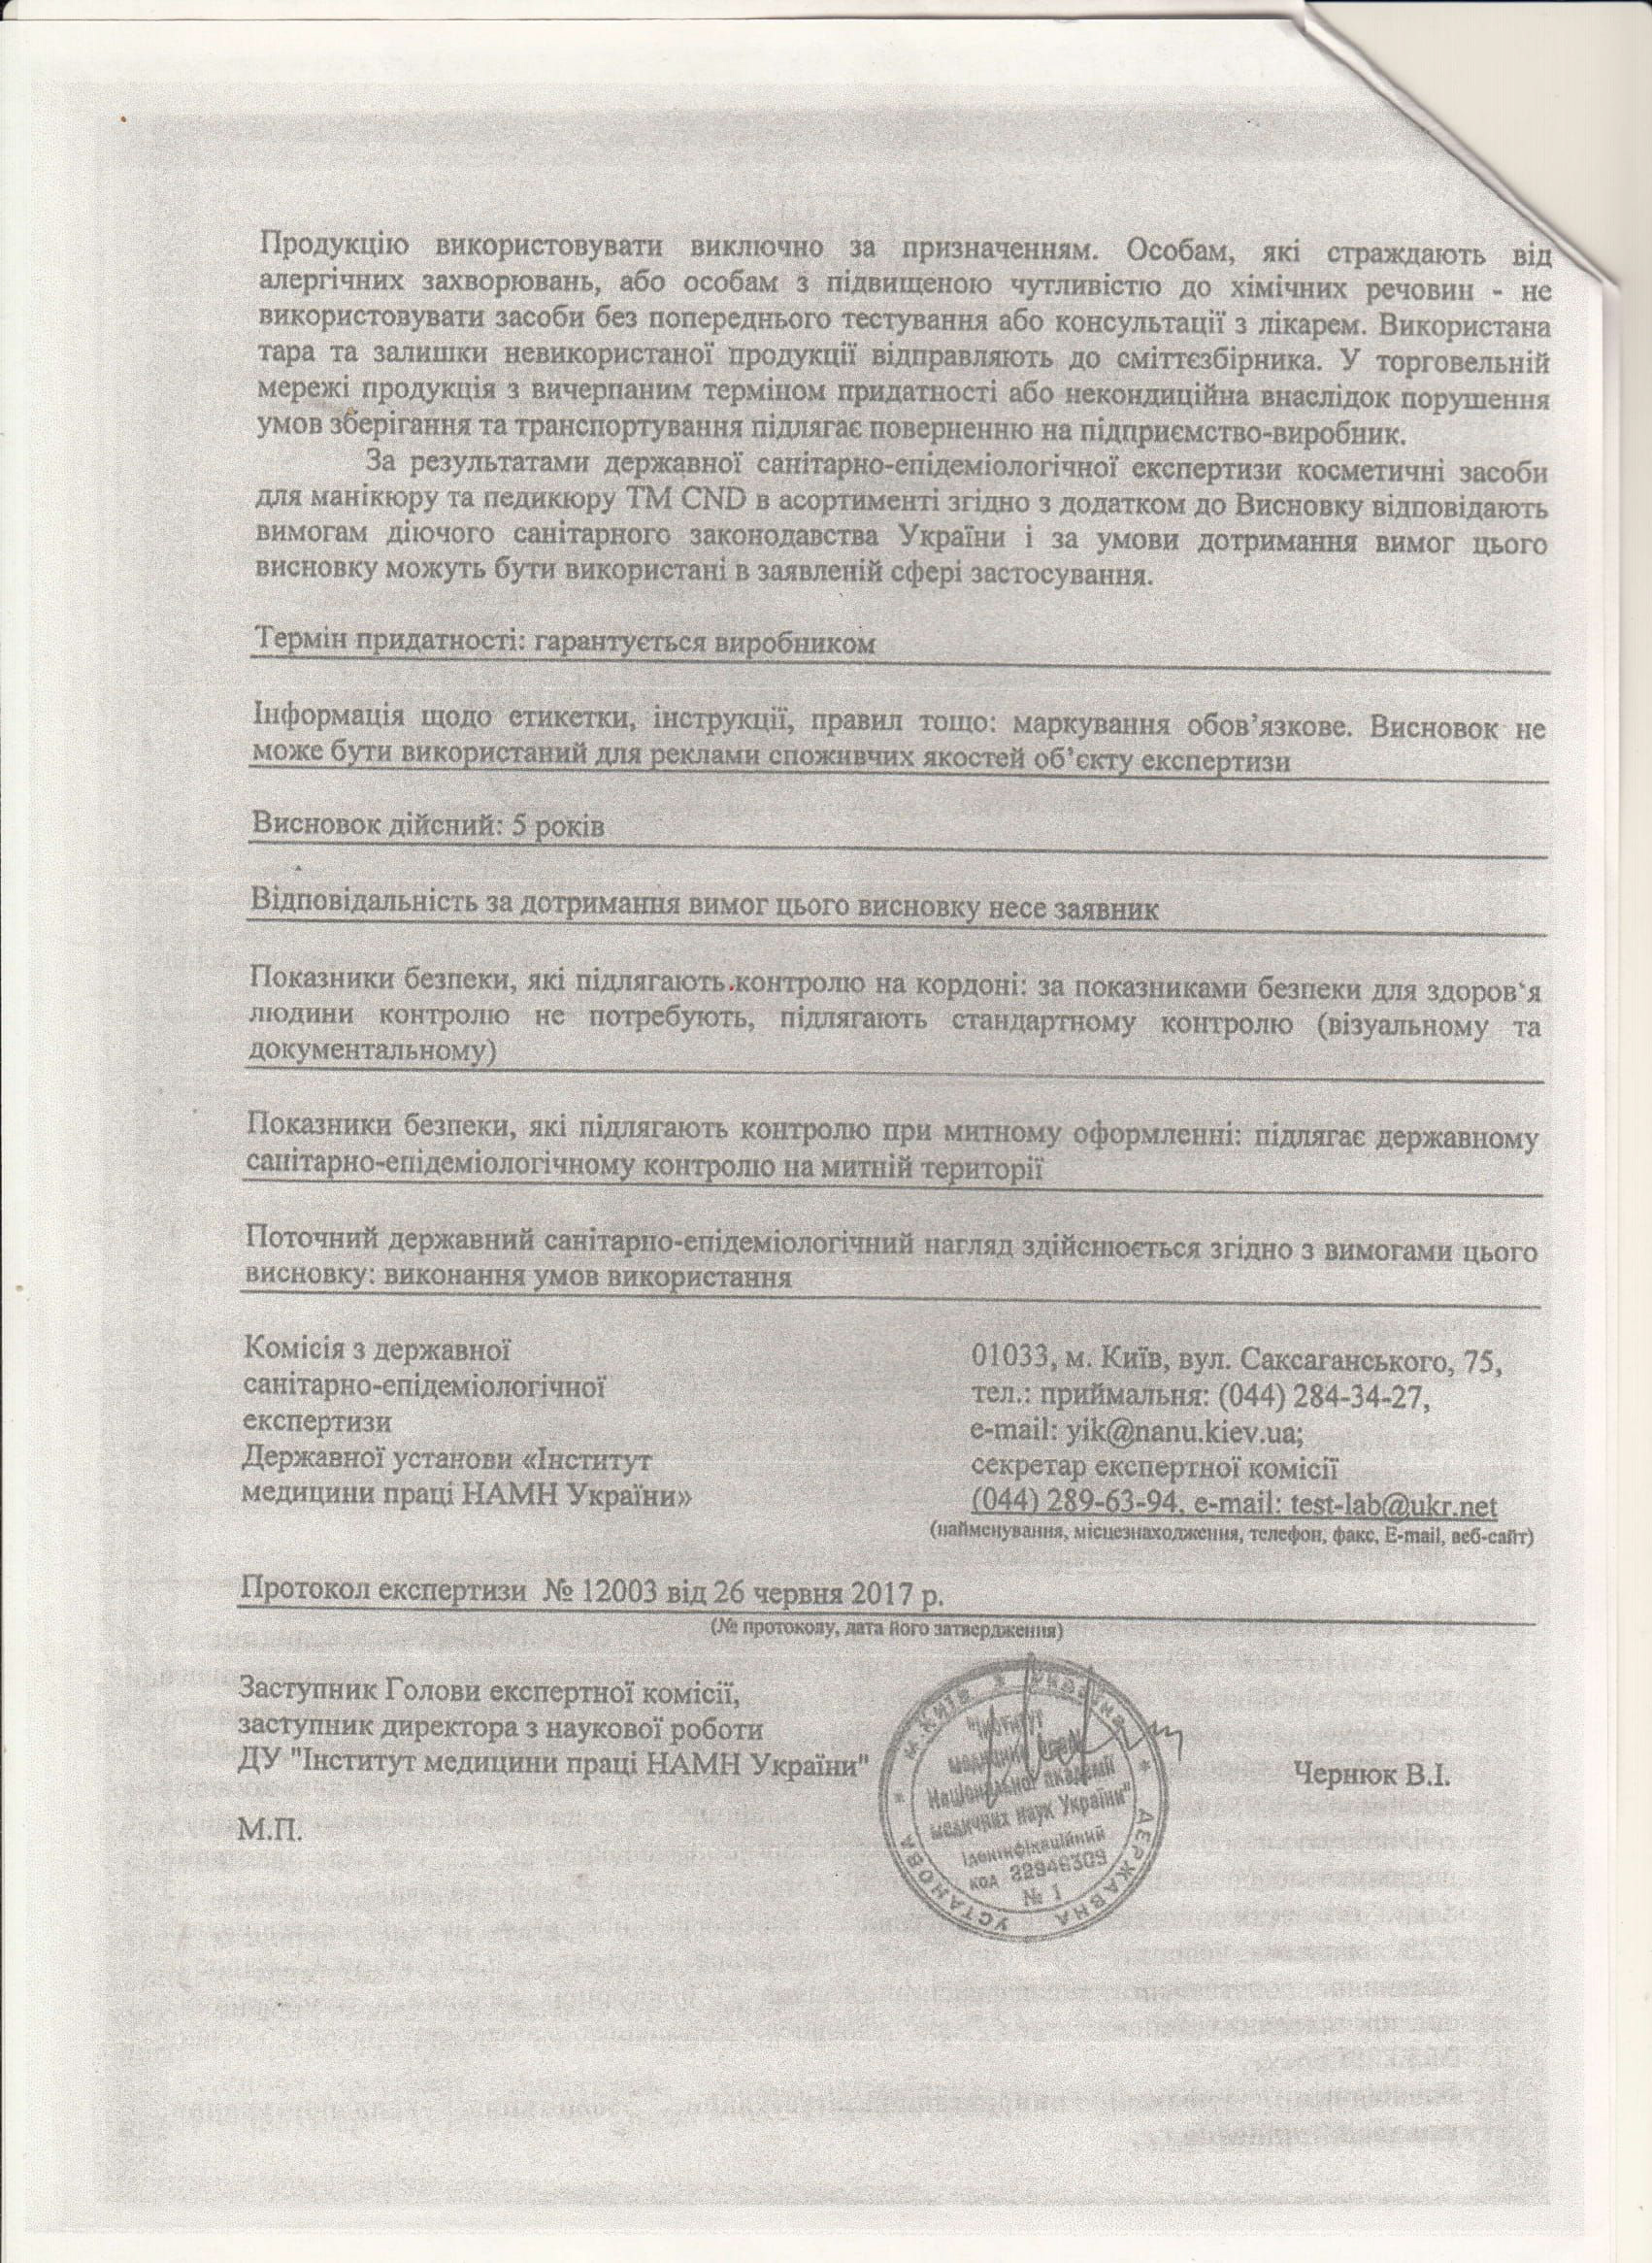 Сертифікат якості на гель-лаки CND, сторінка 2